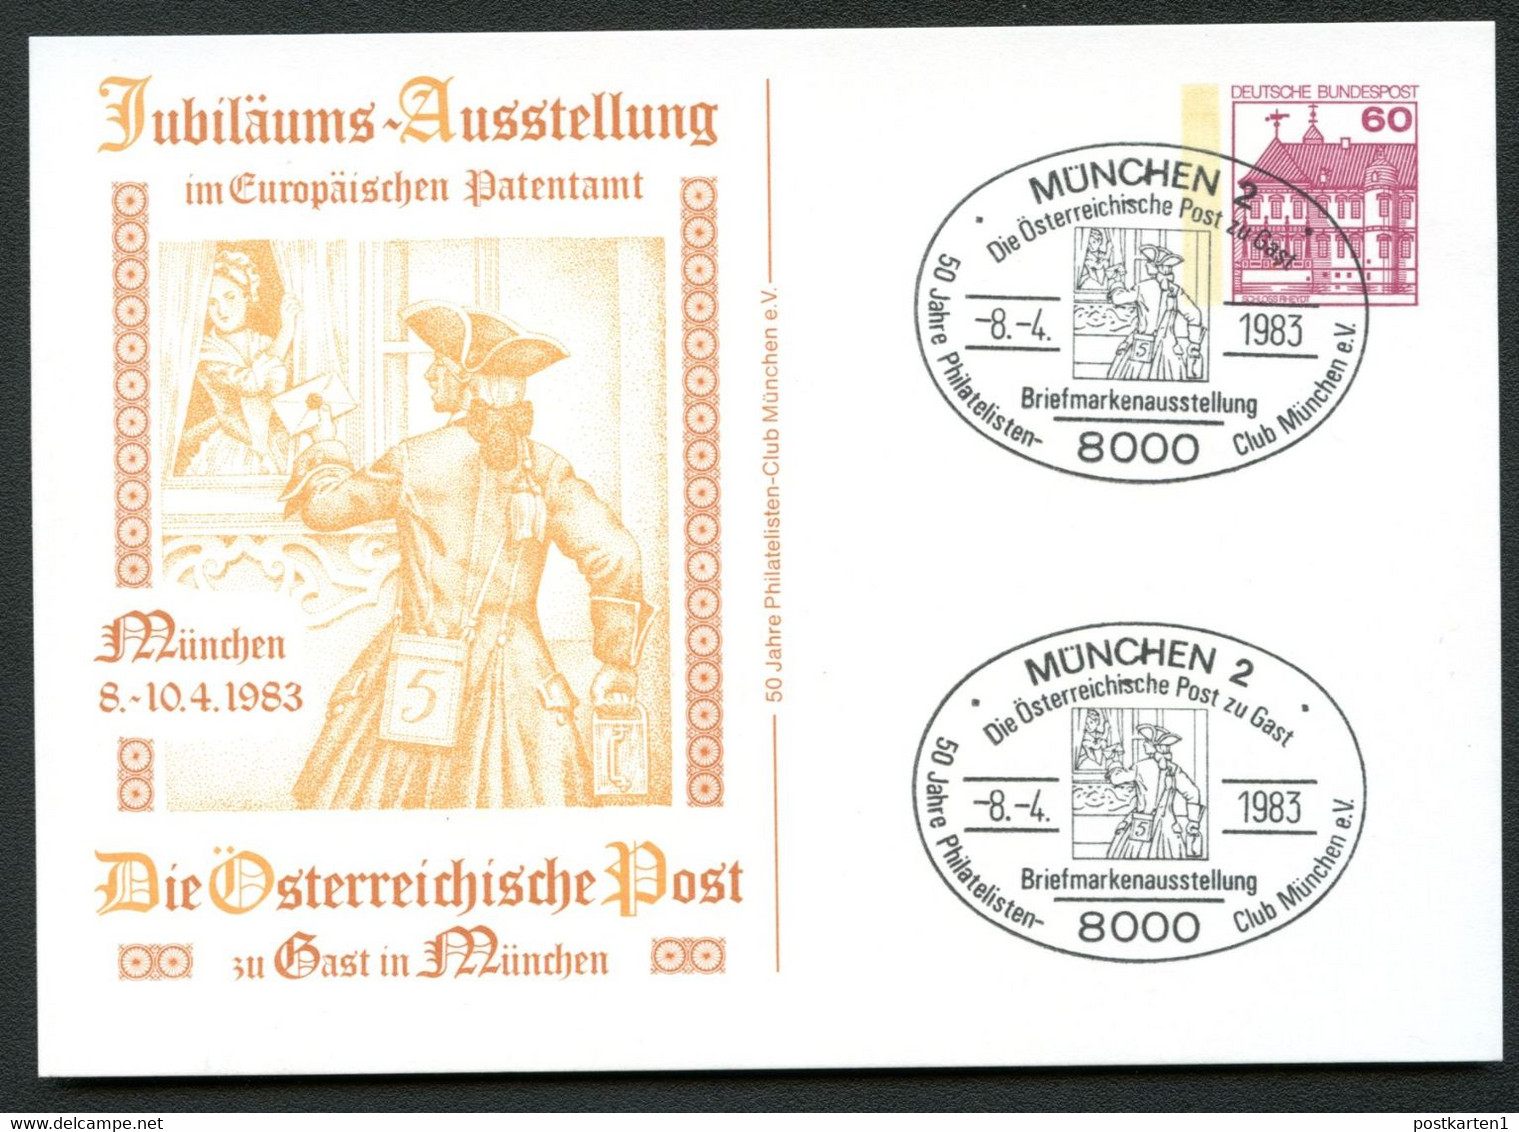 Bund PP106 D2/054 ÖSTERREICHISCHE POST POSTBOTE Sost. München 1983 - Private Postcards - Used